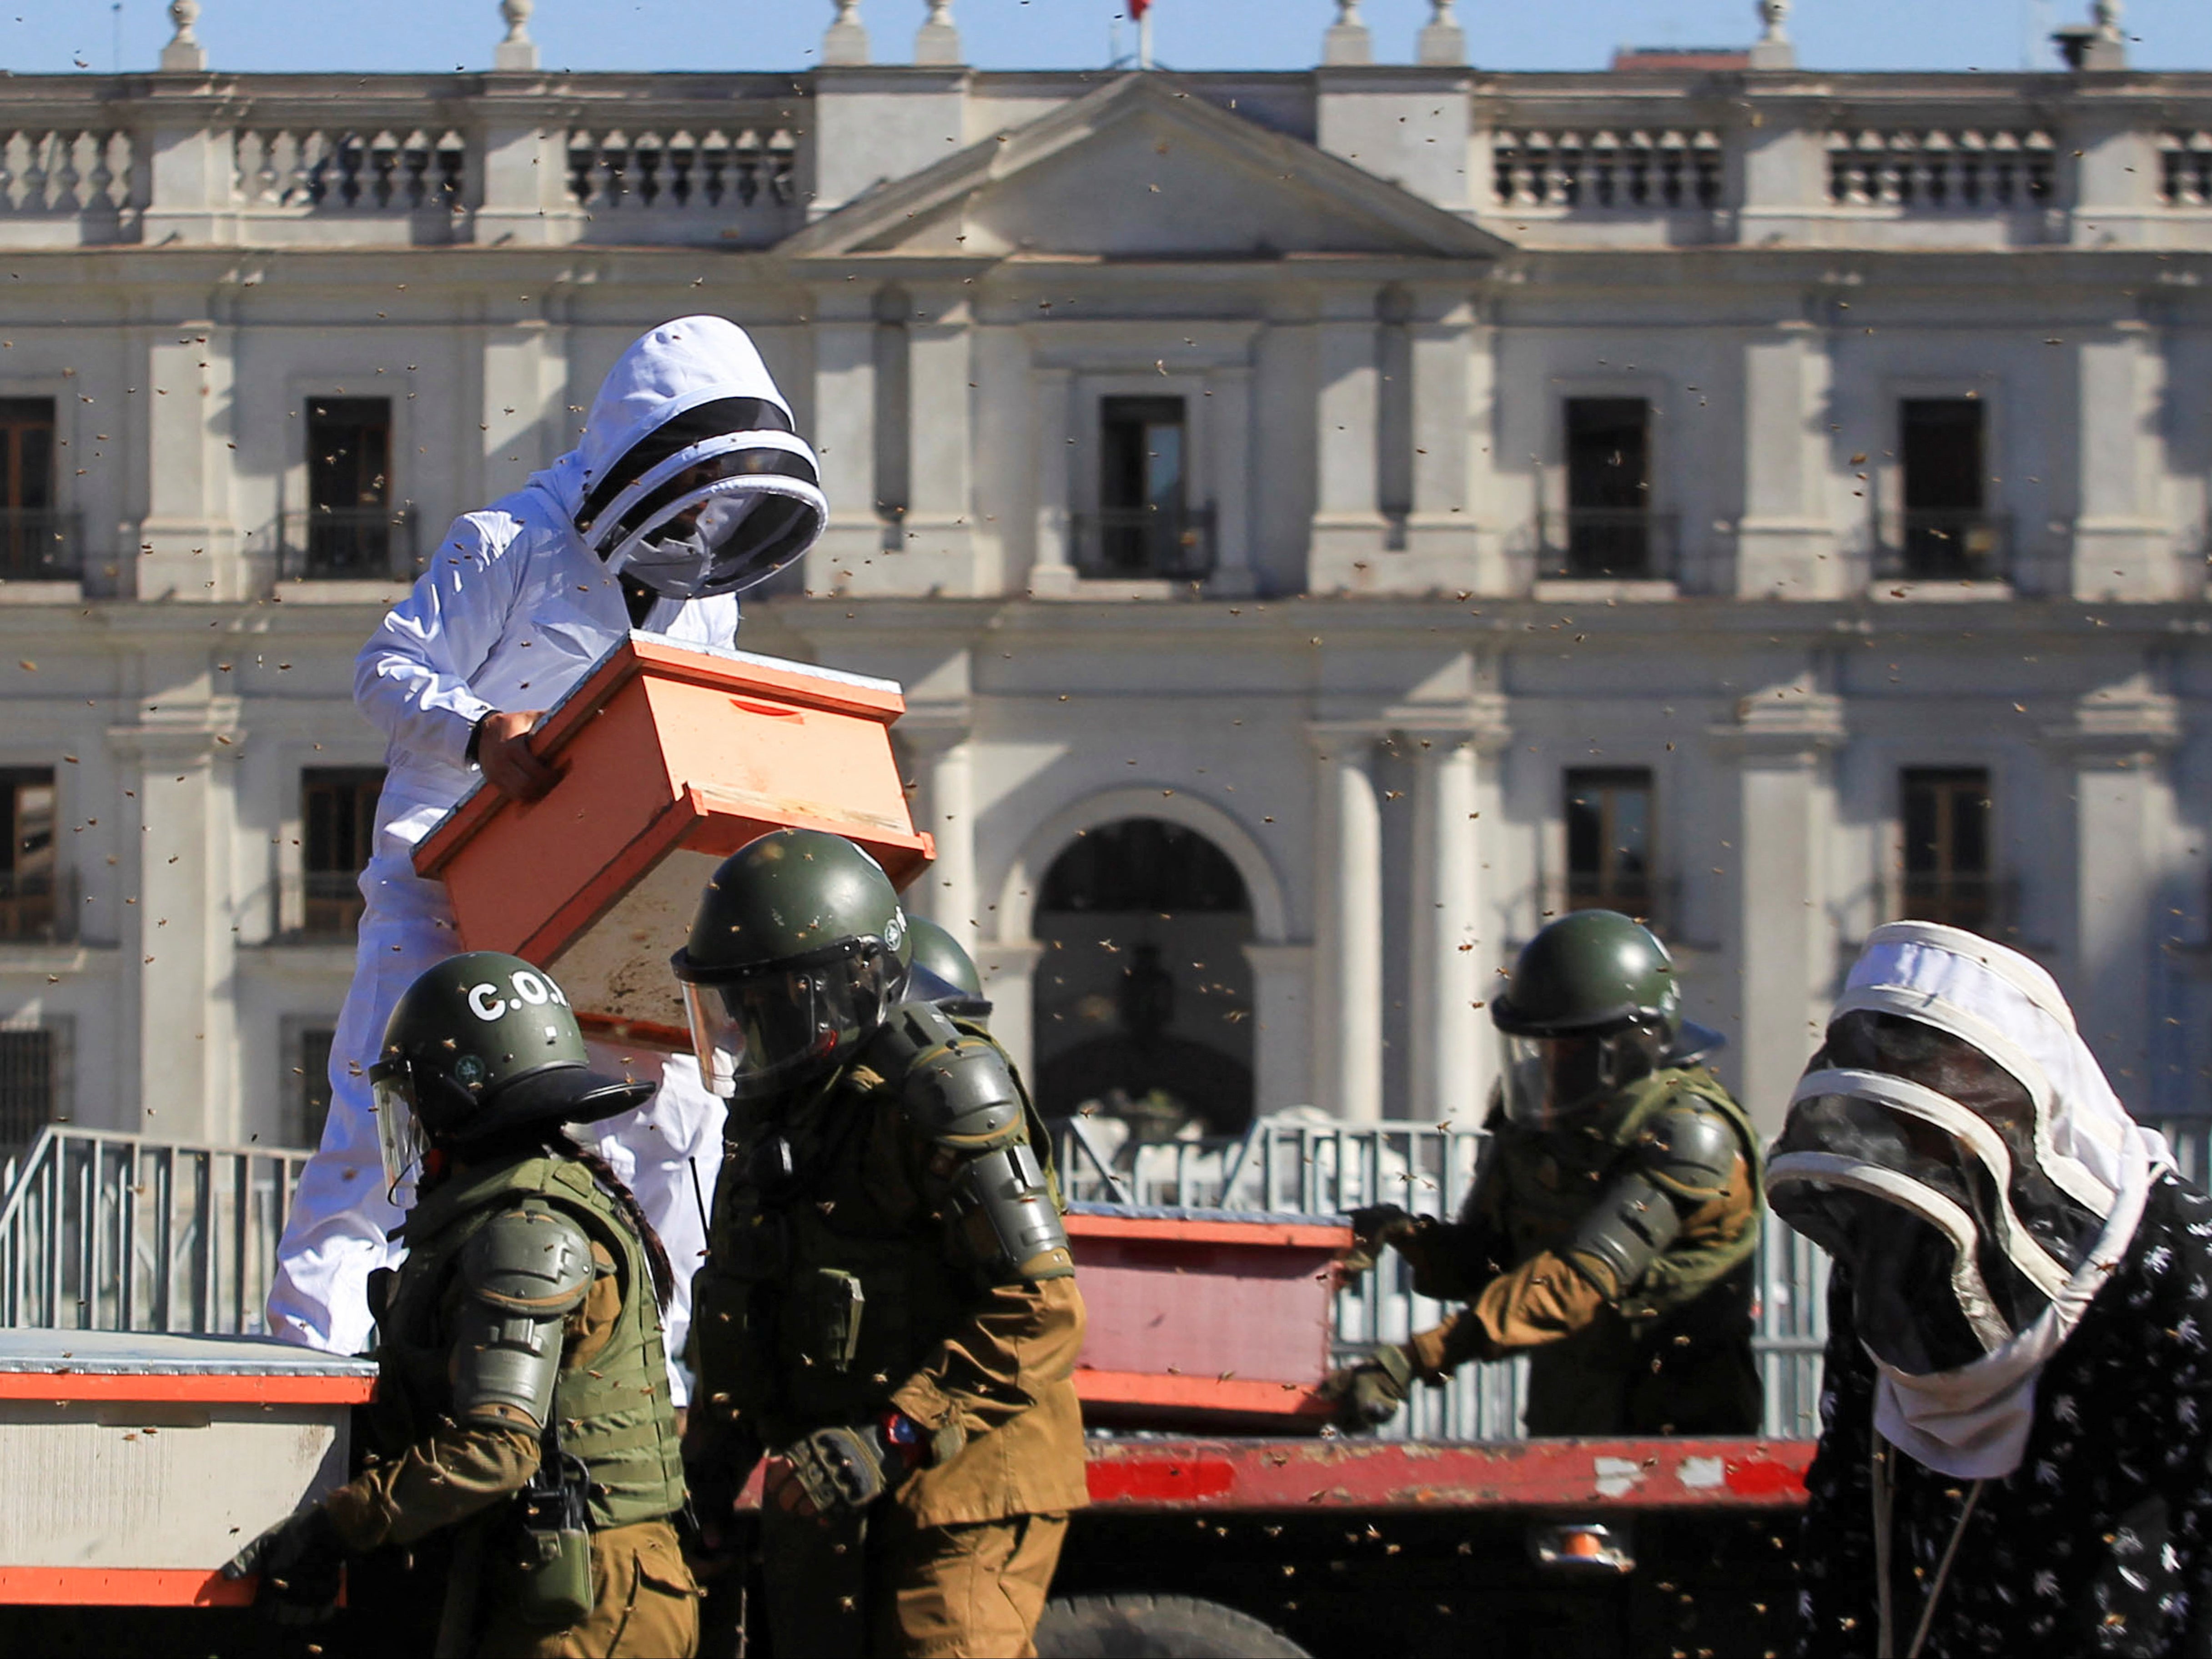 Apicultores protestan con panales llenos de abejas frente al palacio presidencial chileno